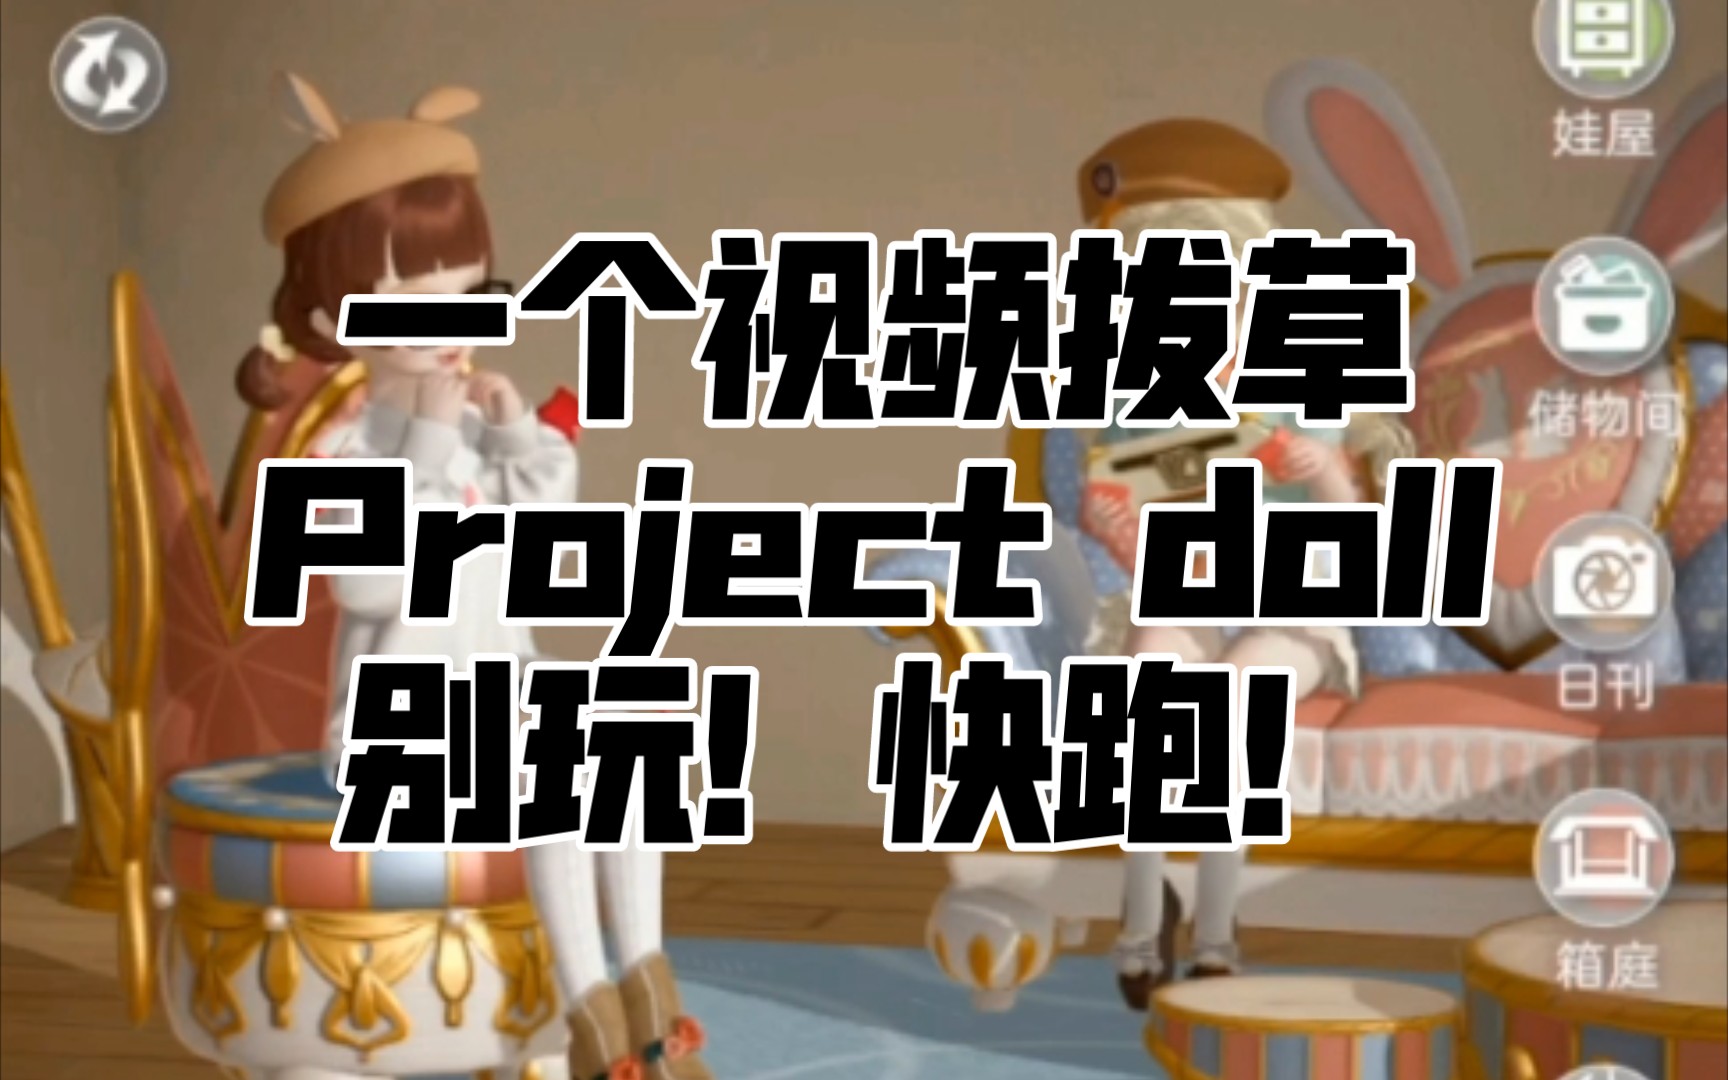 [图]【BJD】project doll‖一个视频拔草这个游戏，别玩！！！快跑！！！